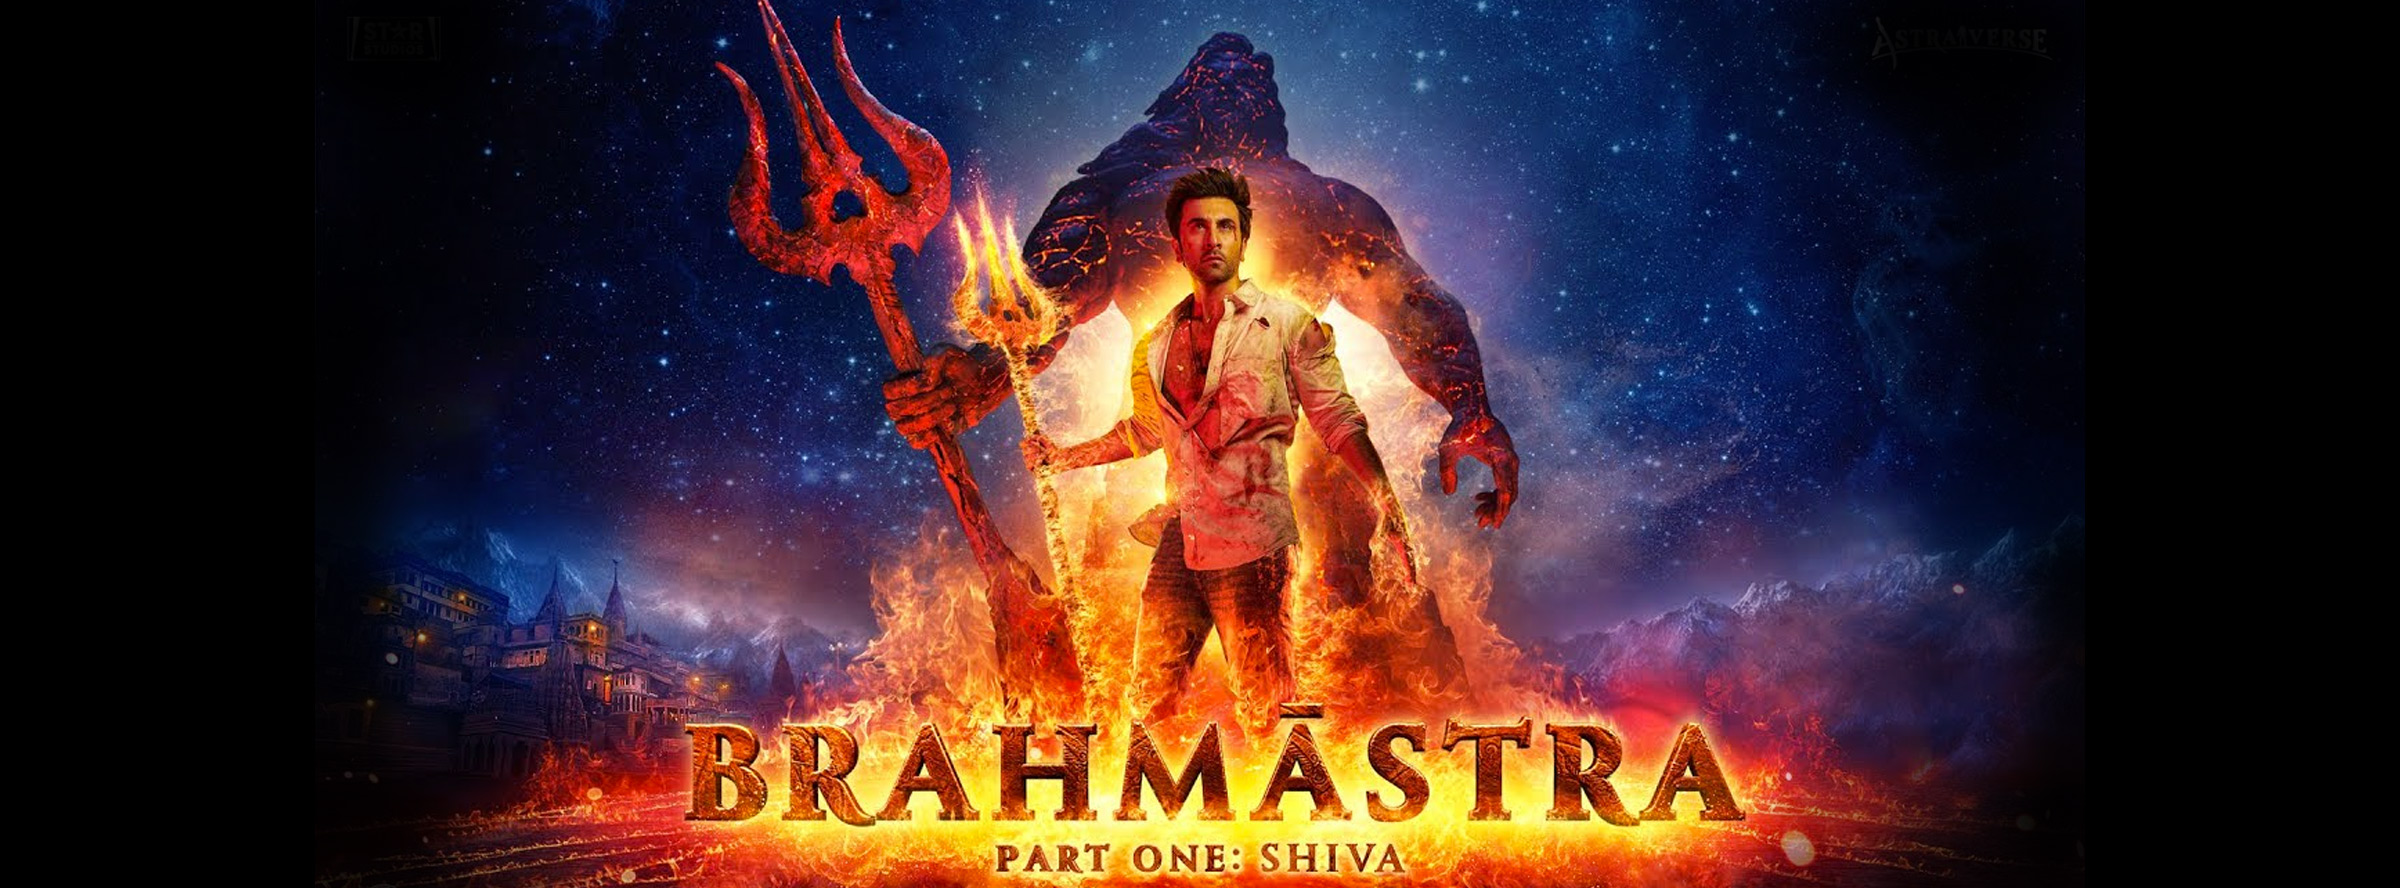 Slider Image for Brahmastra Part One: Shiva (Hindi)